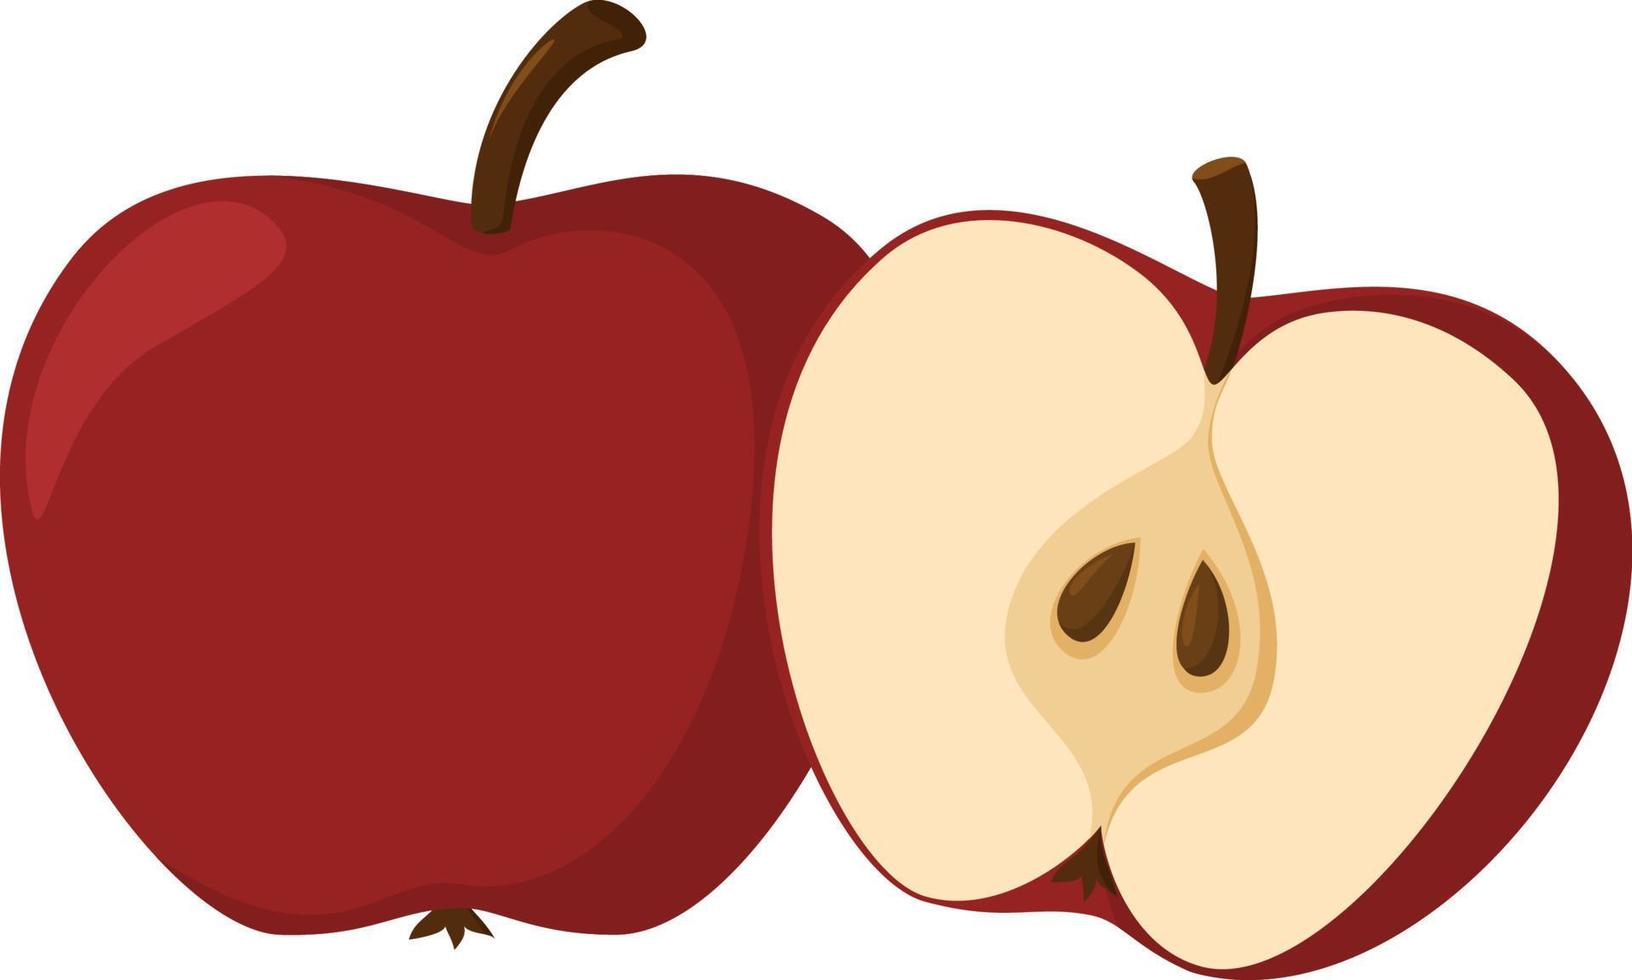 färsk äpple. hela äpple frukt och ett äpple skära i halv. tecknad serie stil. vektor illustration isolerat på en vit bakgrund